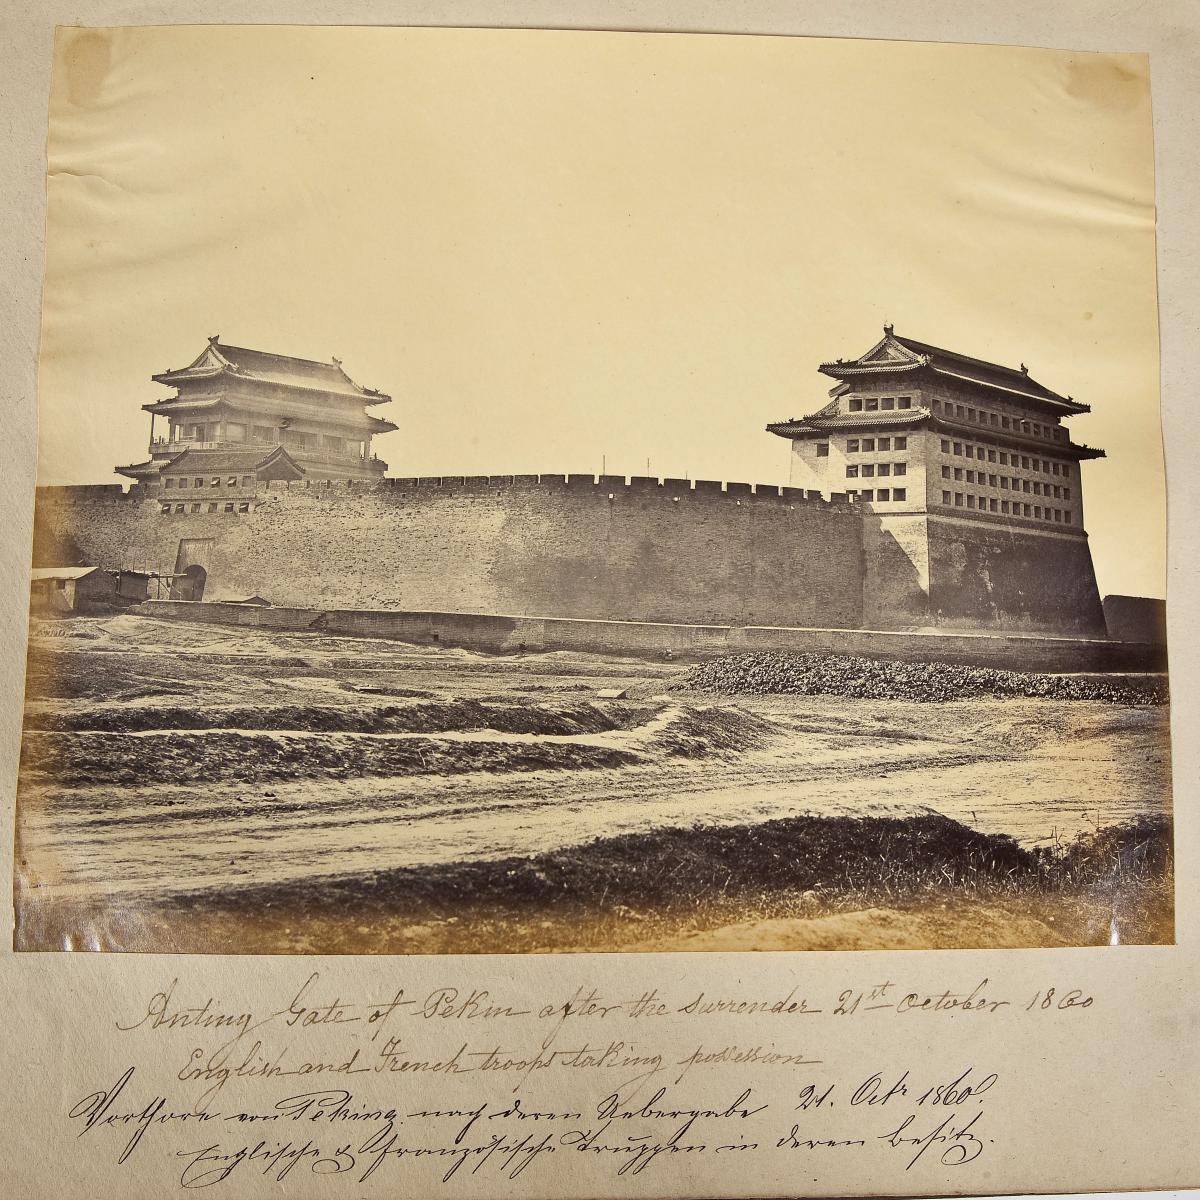 Gate of Pekin after the surrender October 21, 1860